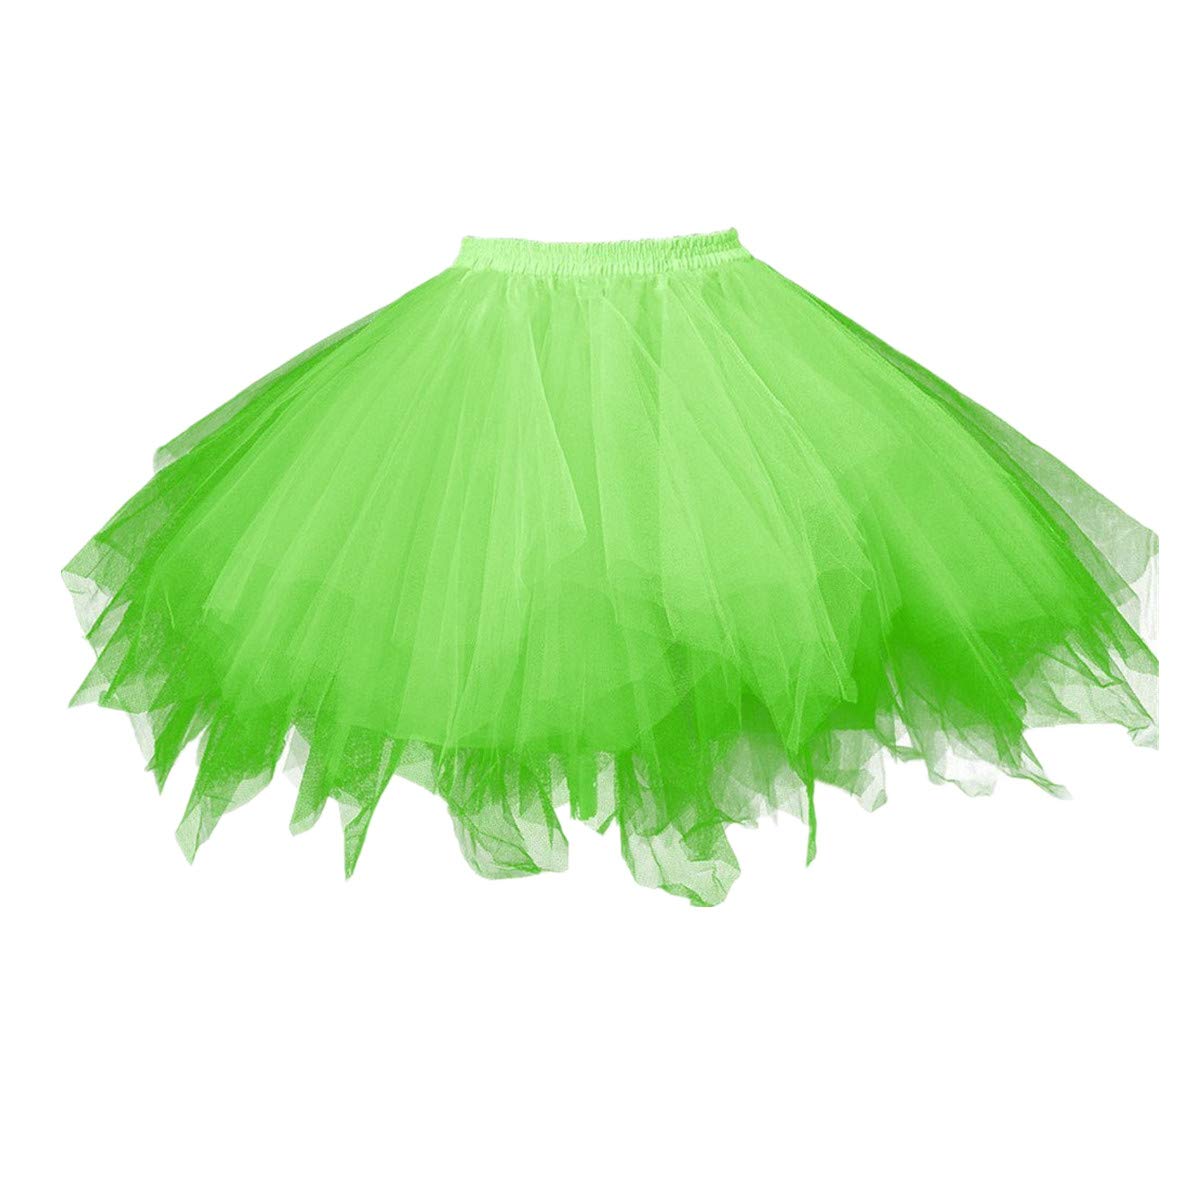 Karneval Erwachsene Damen 80's Tüllrock Tütü Röcke Tüll Petticoat Tutu Grün